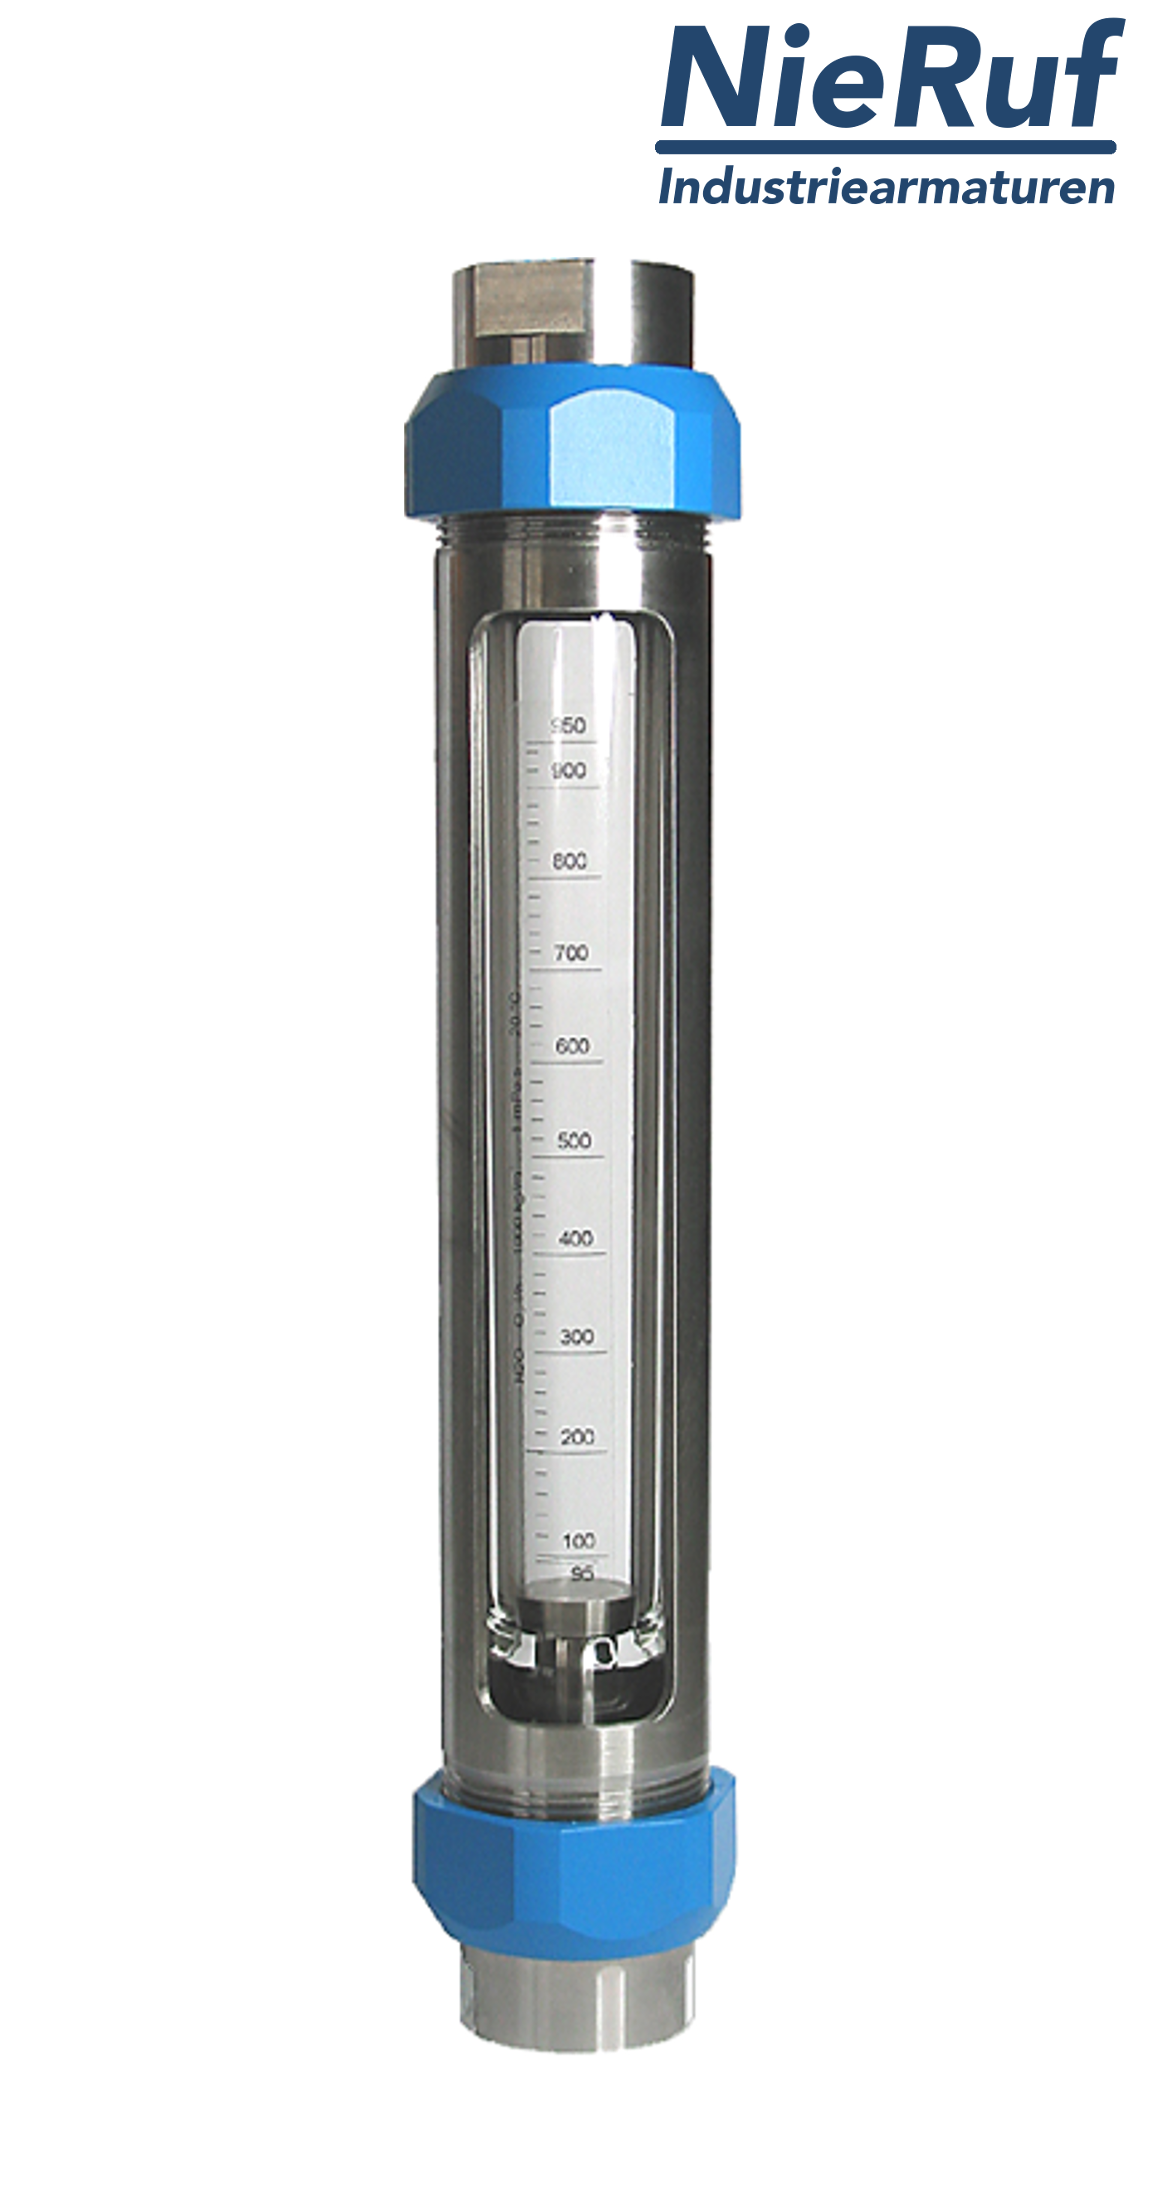 débitmètre à flotteur en acier inoxydable 3/4" pouce 160,0 - 1600 l/h eau FKM